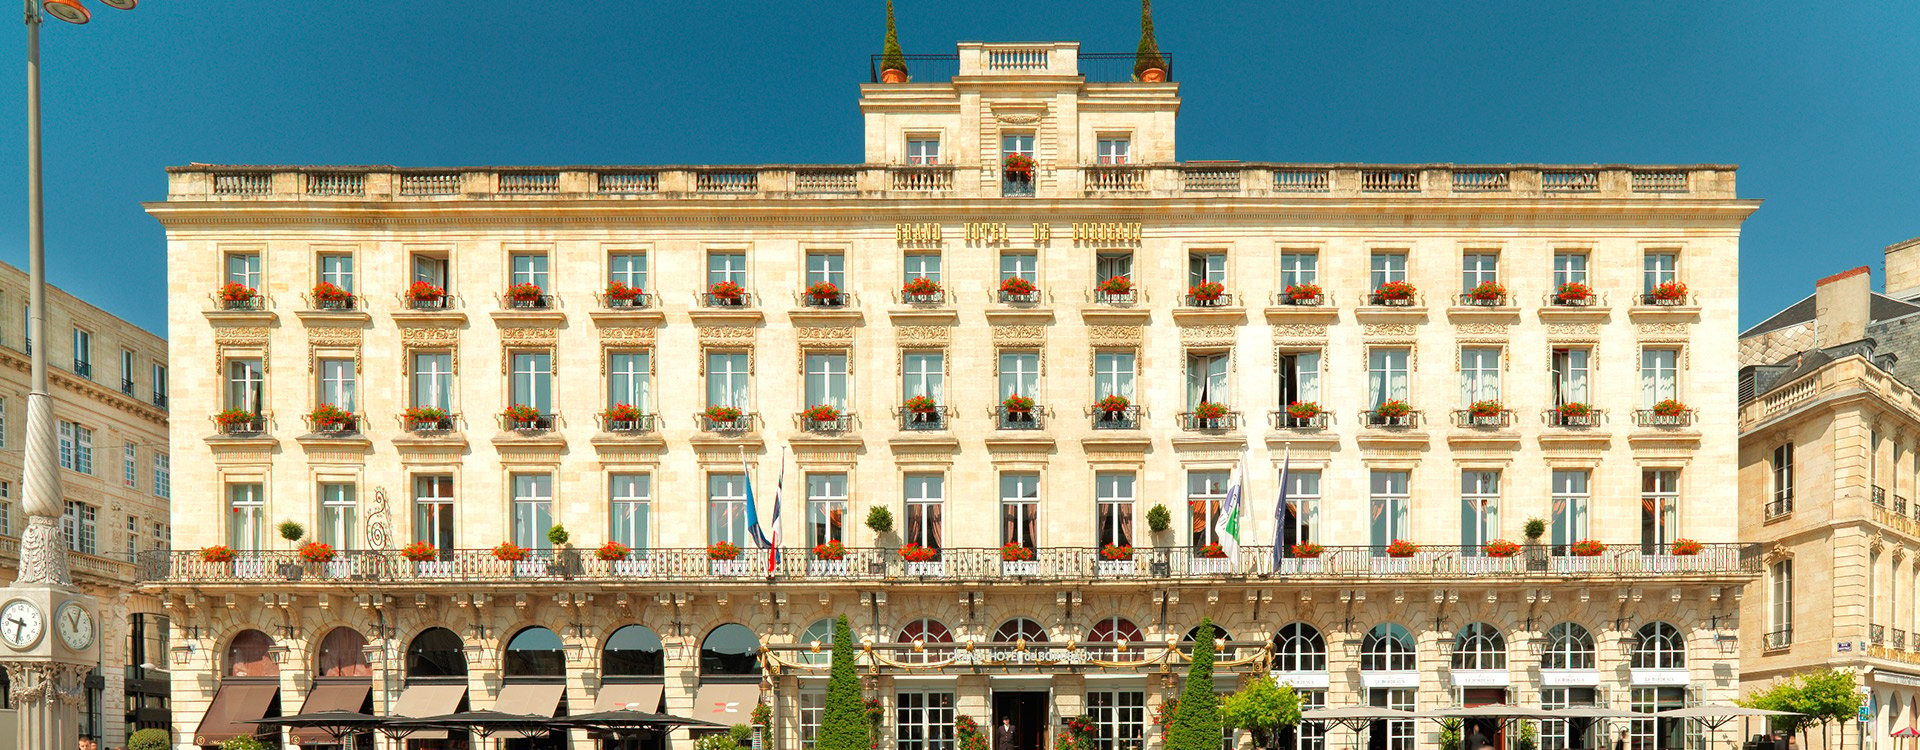 Grand Hotel de Bordeaux_Facade